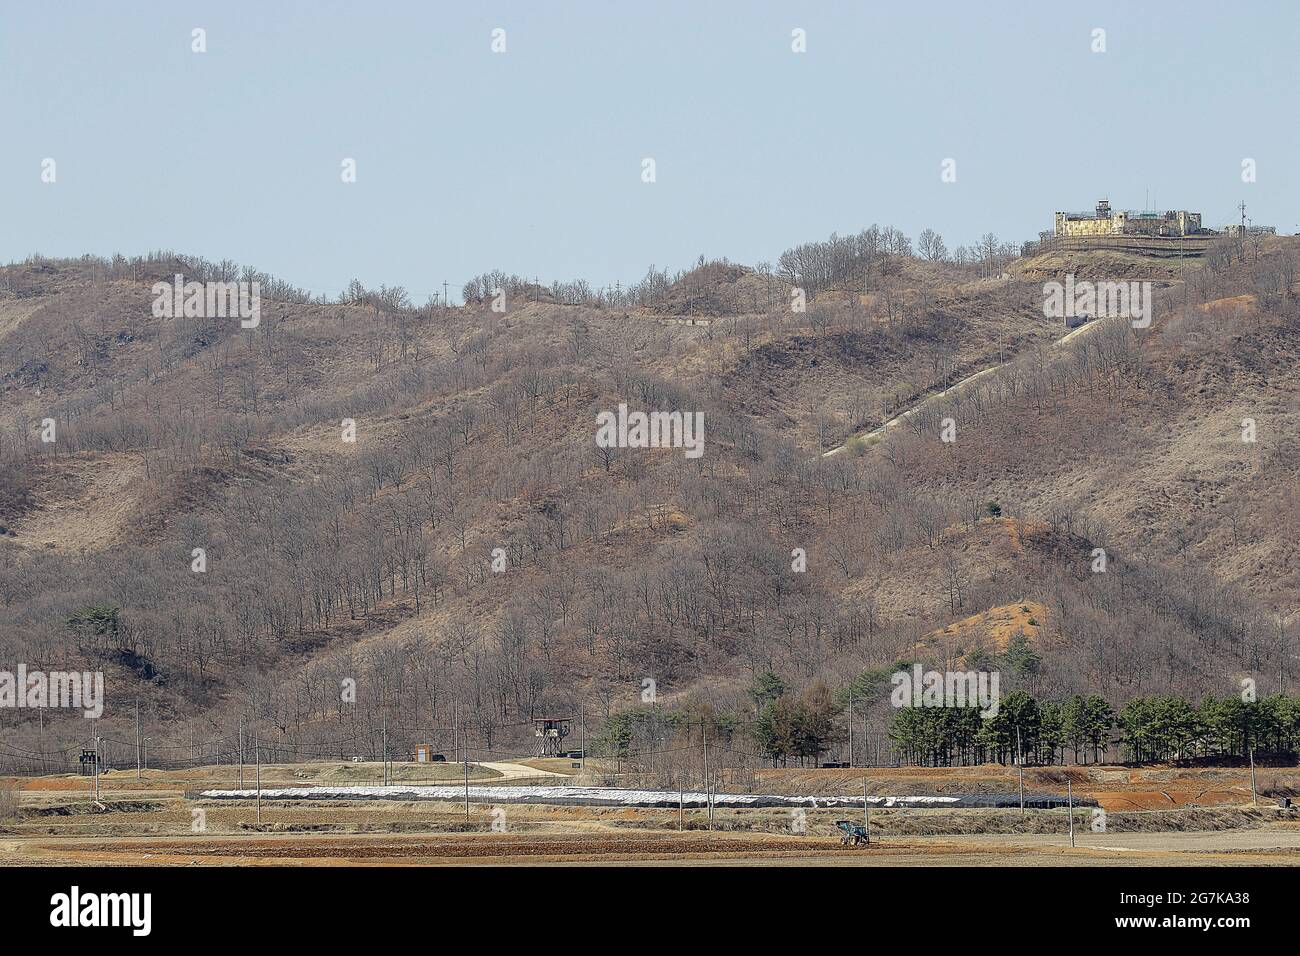 11 avril 2018-Goyang, Corée du Sud-UNE vue de la guerre de Corée bataille de cheval blanc et la ligne de contrôle civile à Cheorwon, Corée du Sud. La bataille de White Horse fut une autre d'une série de batailles sanglantes pour les positions dominantes sur les collines pendant la guerre de Corée. Baengma-goji était une colline de 395 mètres (1,296 pieds) dans le triangle de fer, formé par Pyonggang à son sommet et Gimhwa-eup et Cheorwon à sa base, était une voie de transport stratégique dans la région centrale de la péninsule coréenne. White Horse était la crête d'une masse de colline boisée qui s'étendait du nord-ouest au sud-est sur environ deux milles Banque D'Images